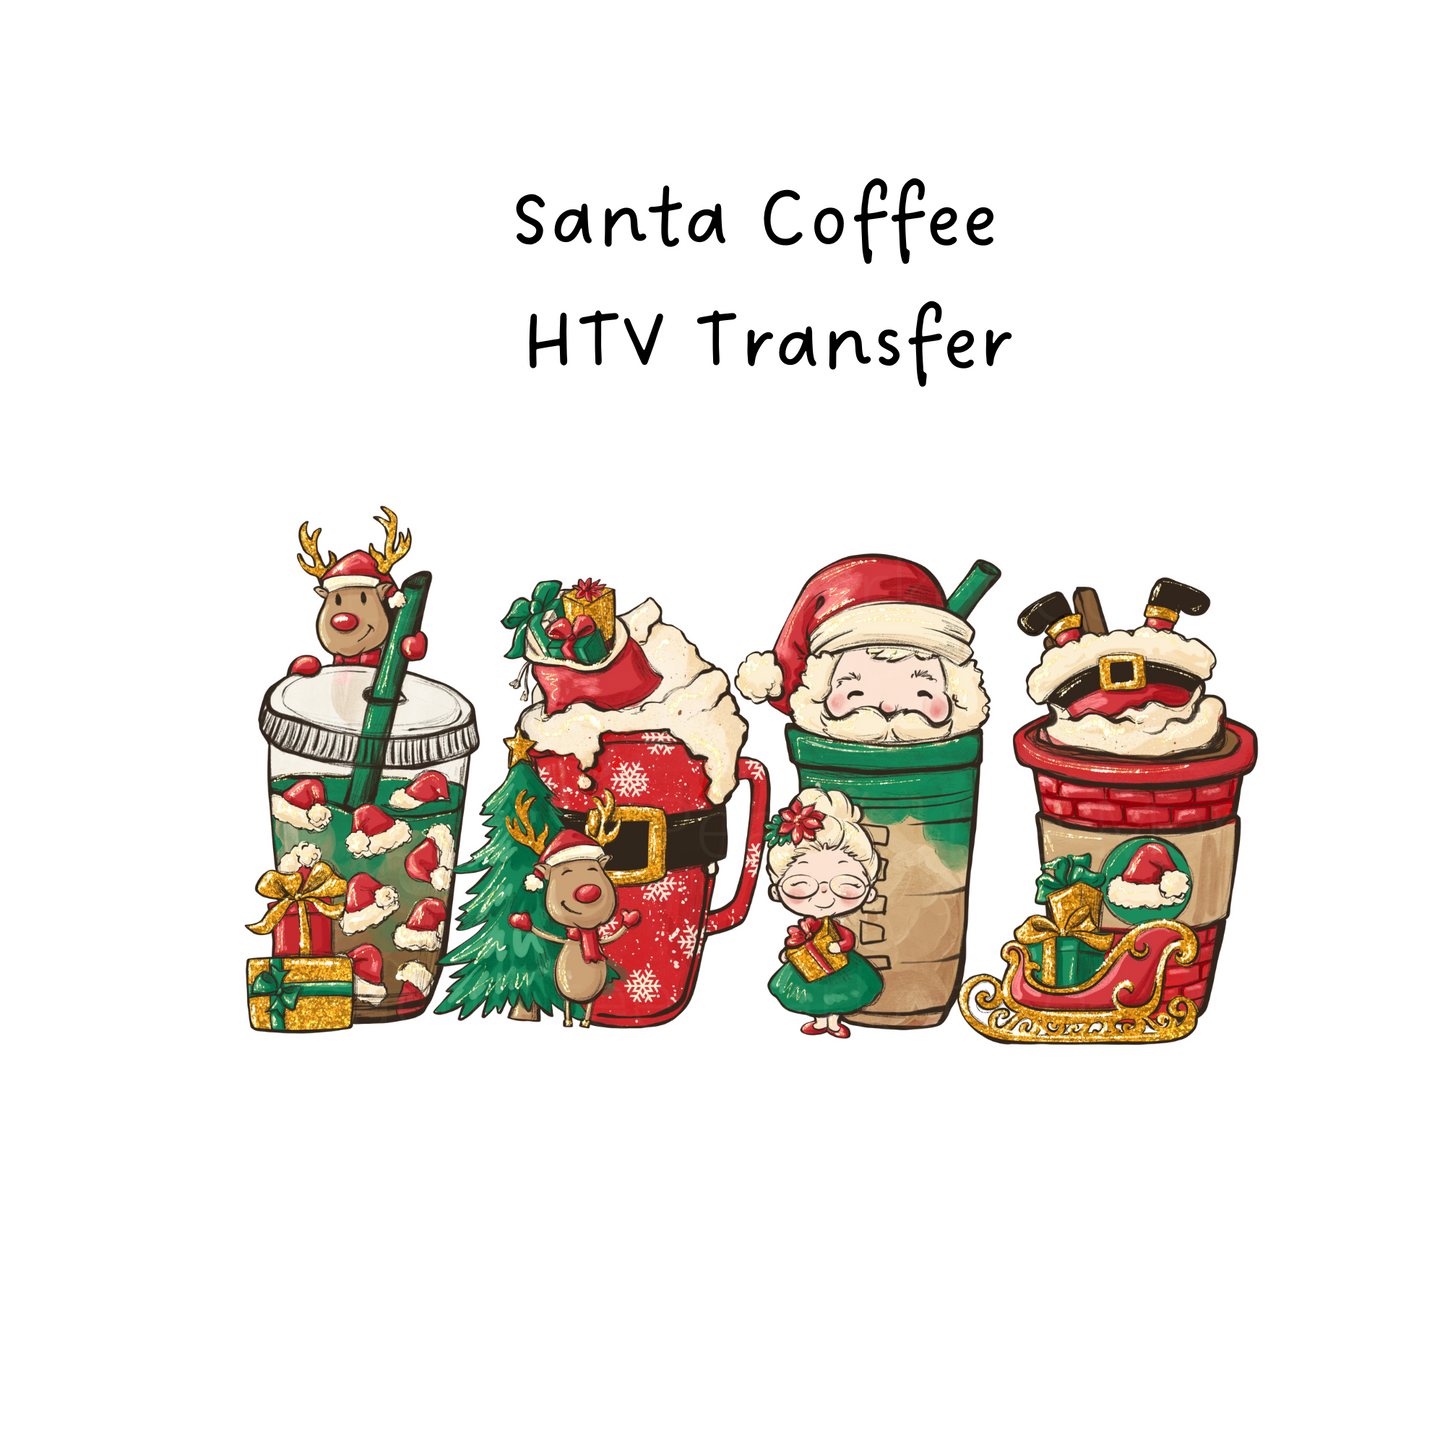 Santa Coffee HTV Transfer